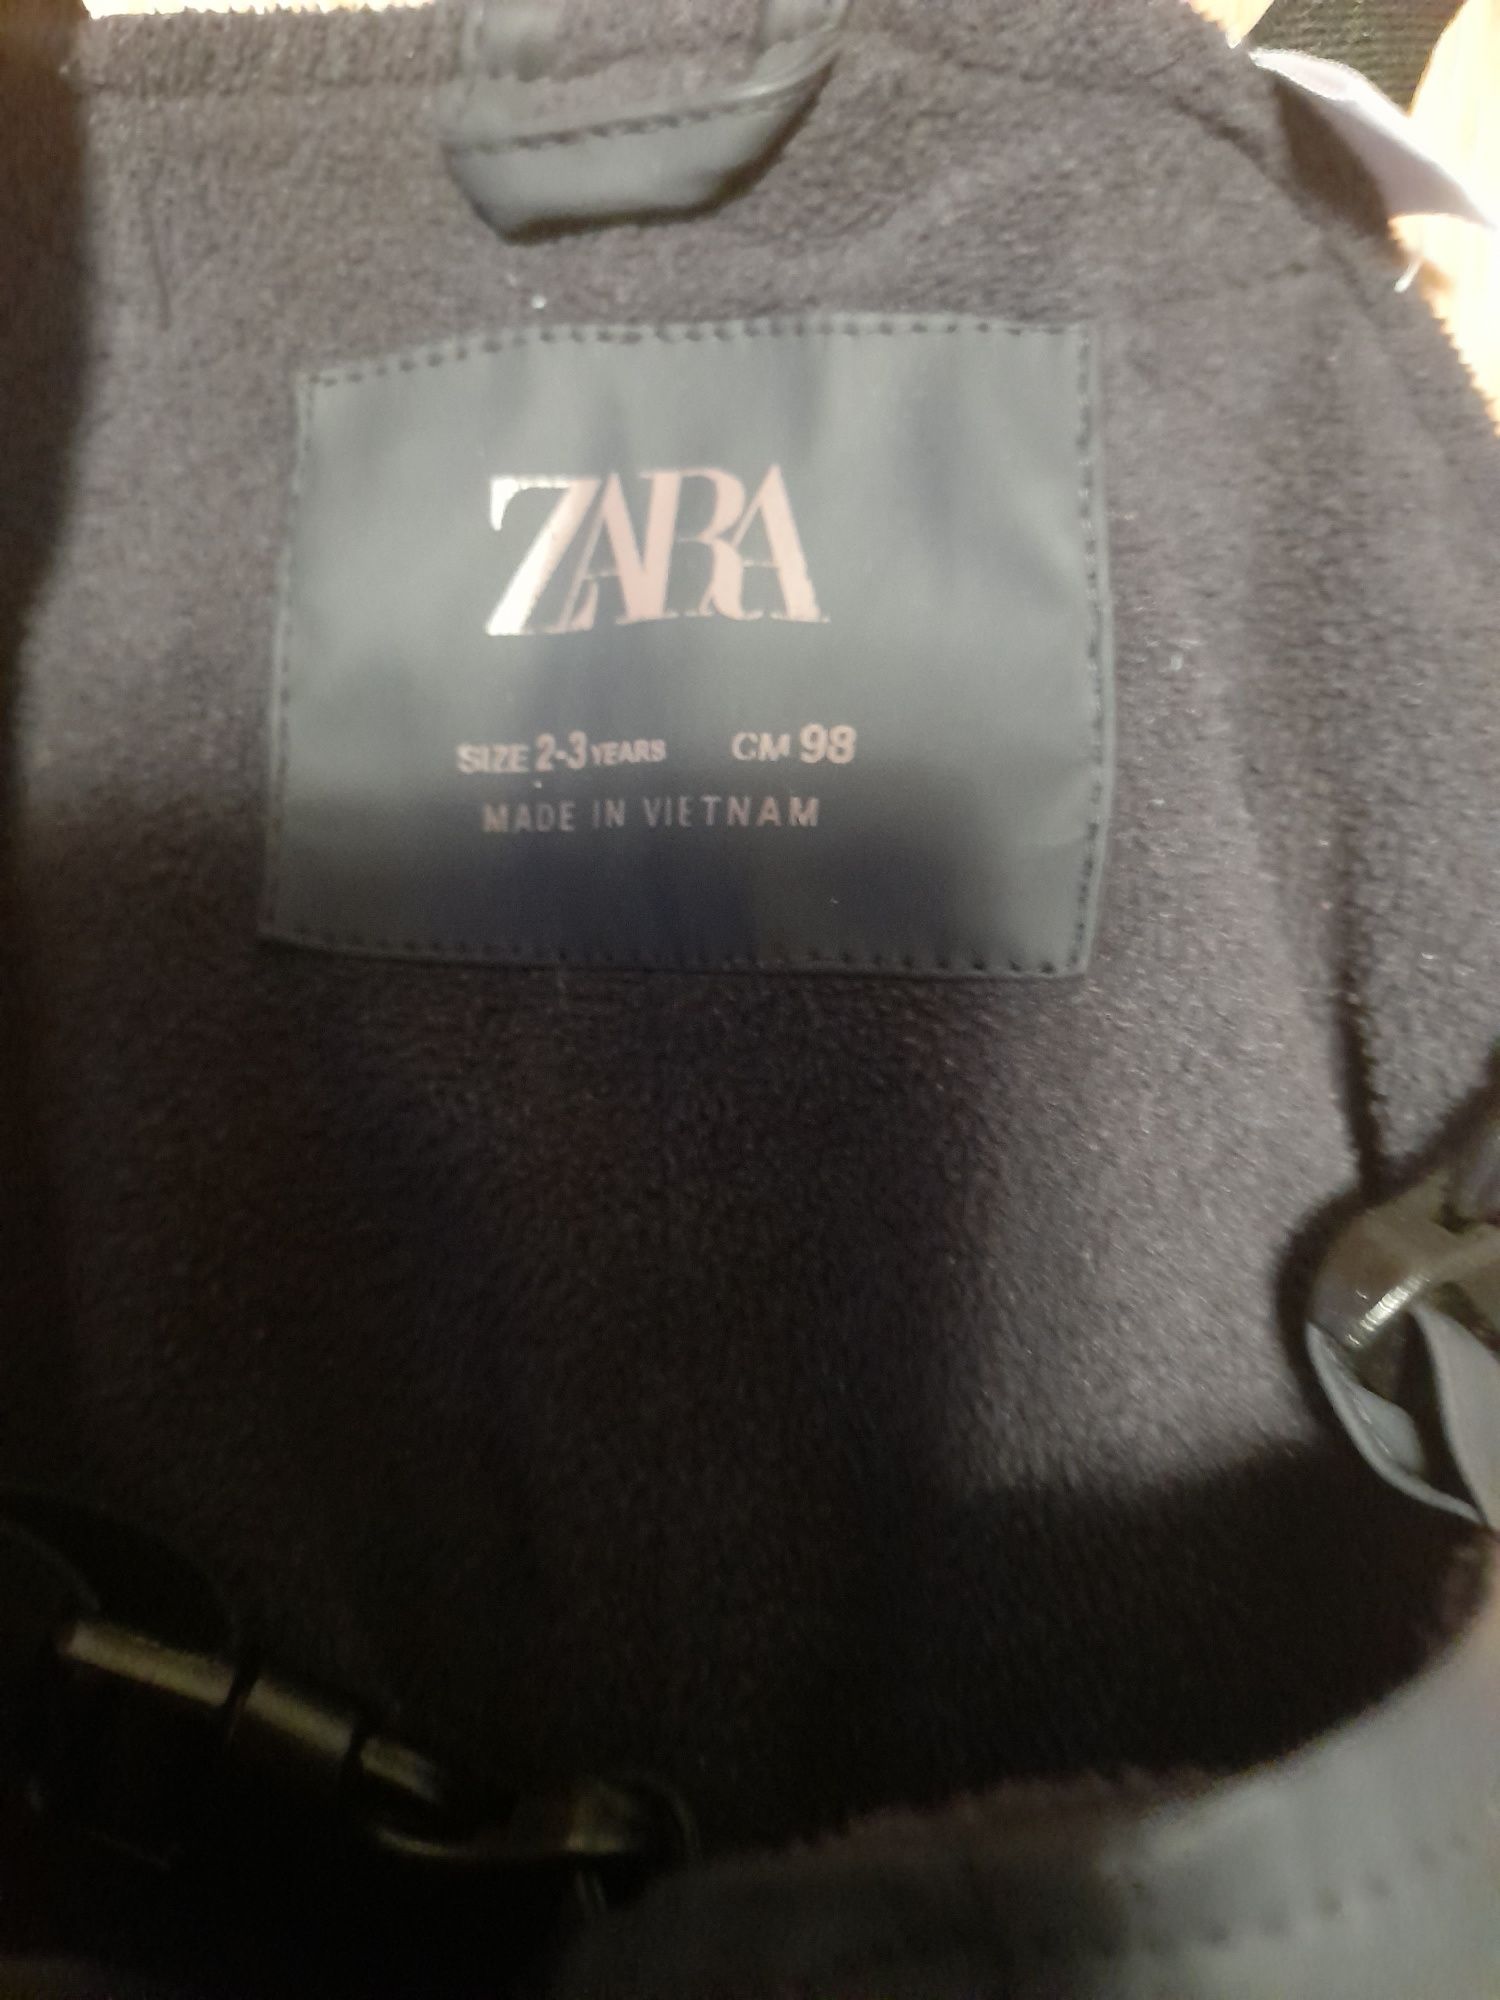 Spodnie na szelkach ocieplane Zara rozmiar 98